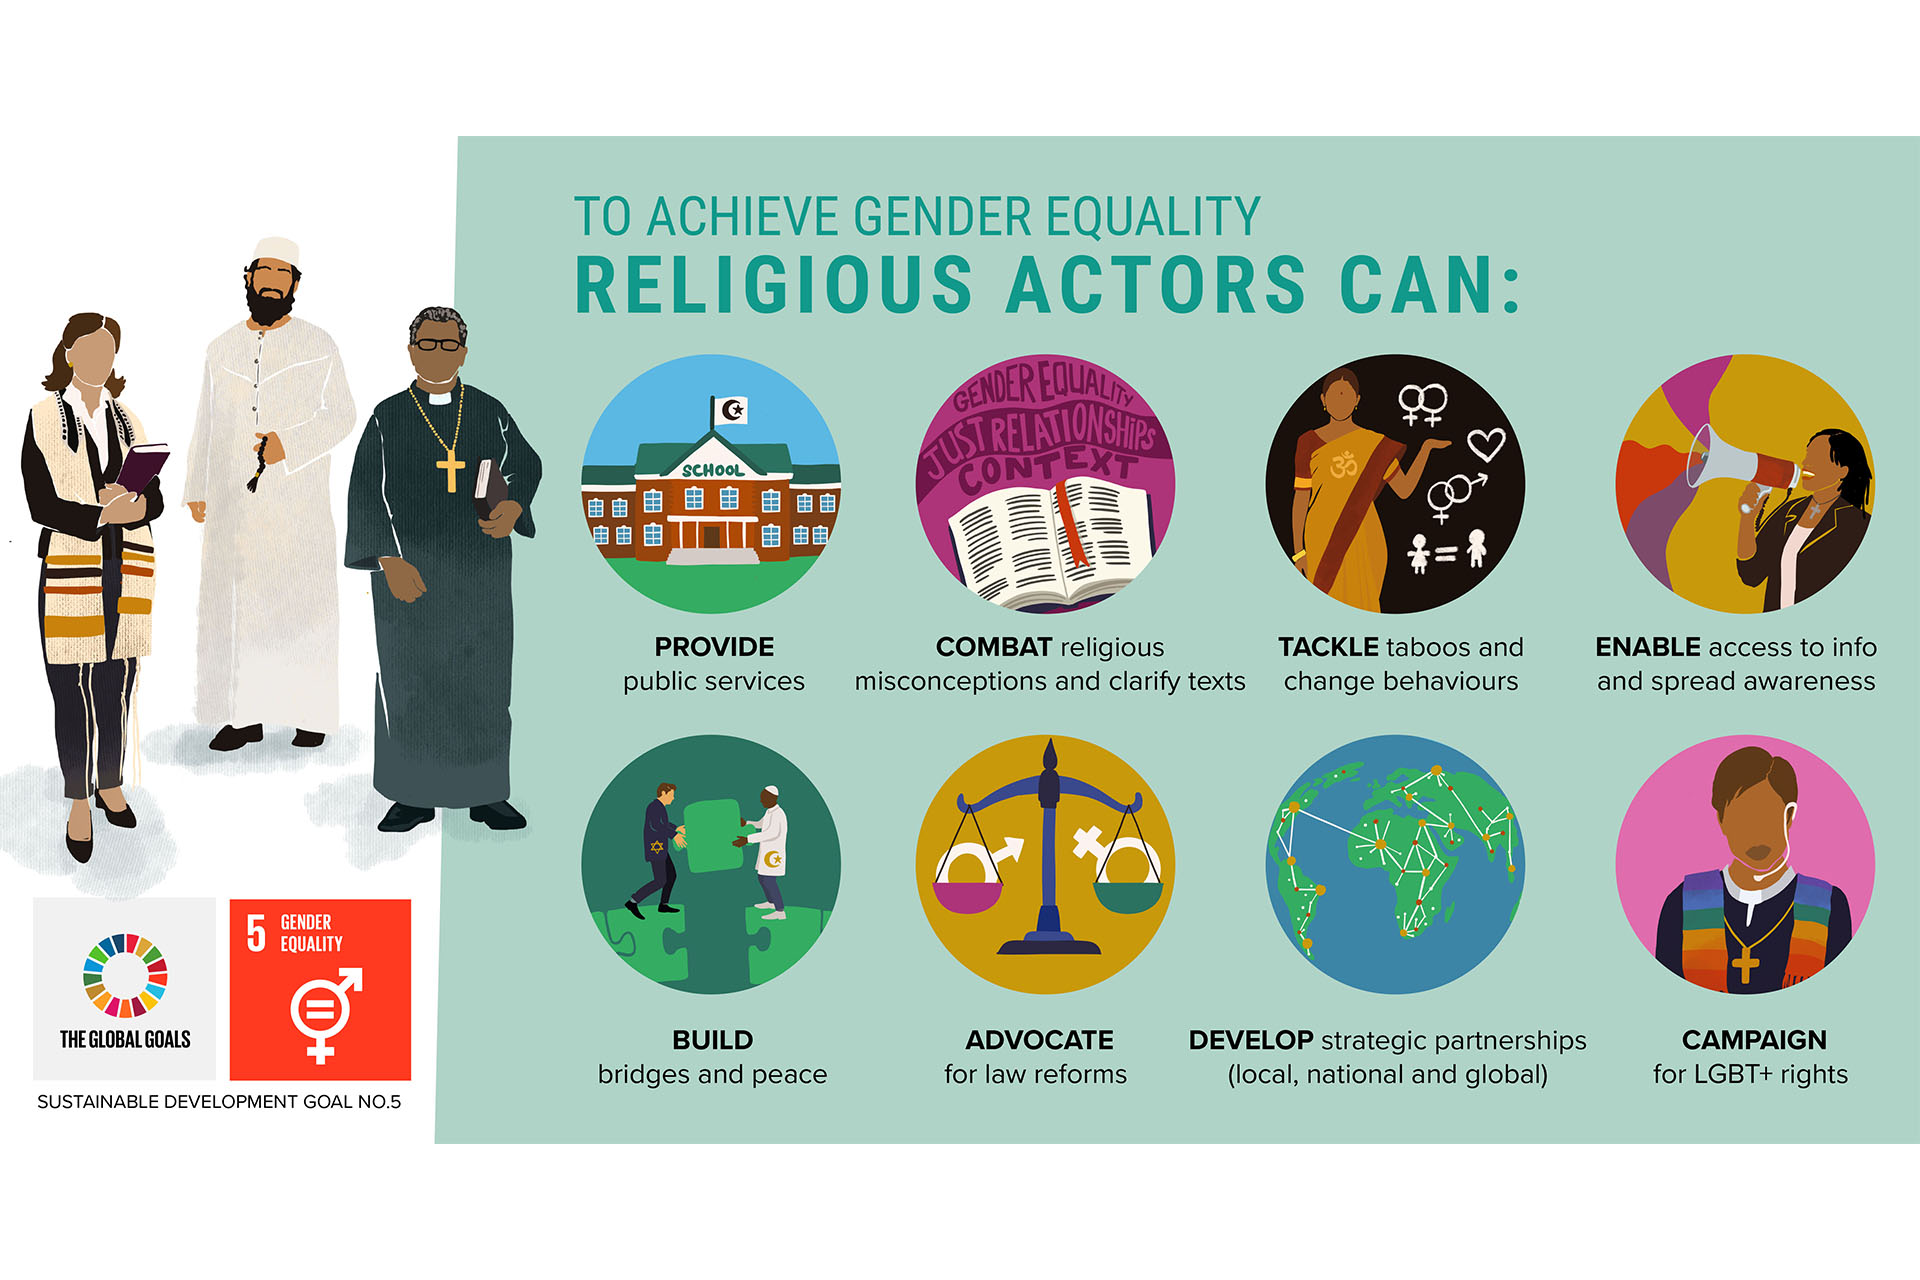 Illustrerade bilder som visar vad religiösaaktörer kan göra. 